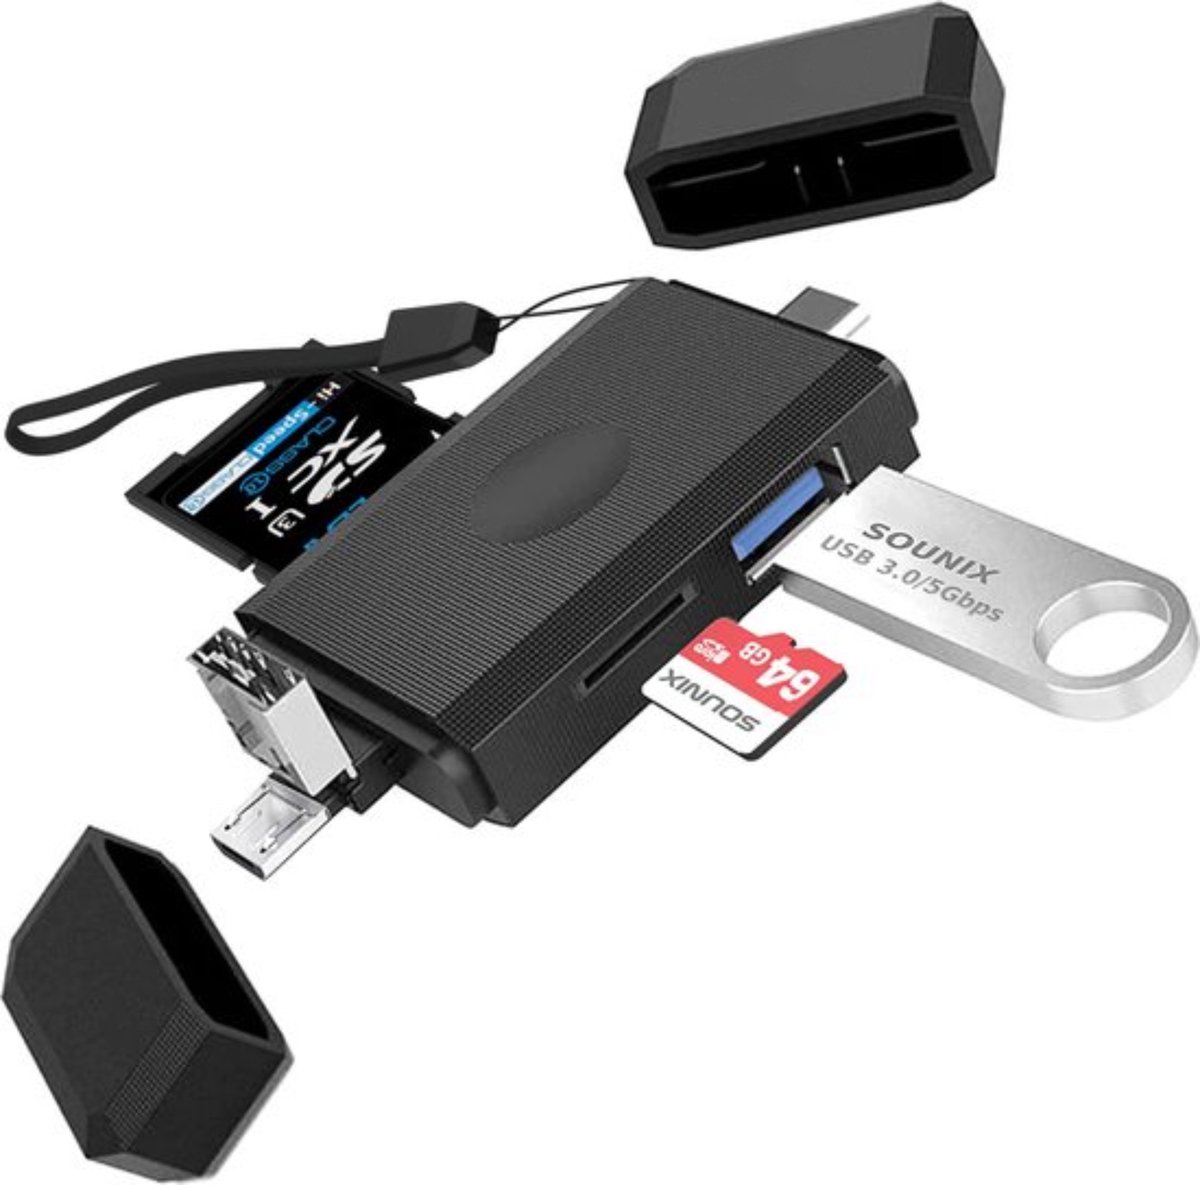 Lecteur de Carte Mémoire, SD/TF Lecteur de Carte et Micro USB OTG à USB 2.0  Adaptateur avec Standard USB Micro USB Type-C Connecteur pour PC, Notebook  et Smartphone avec Fonction OTG 